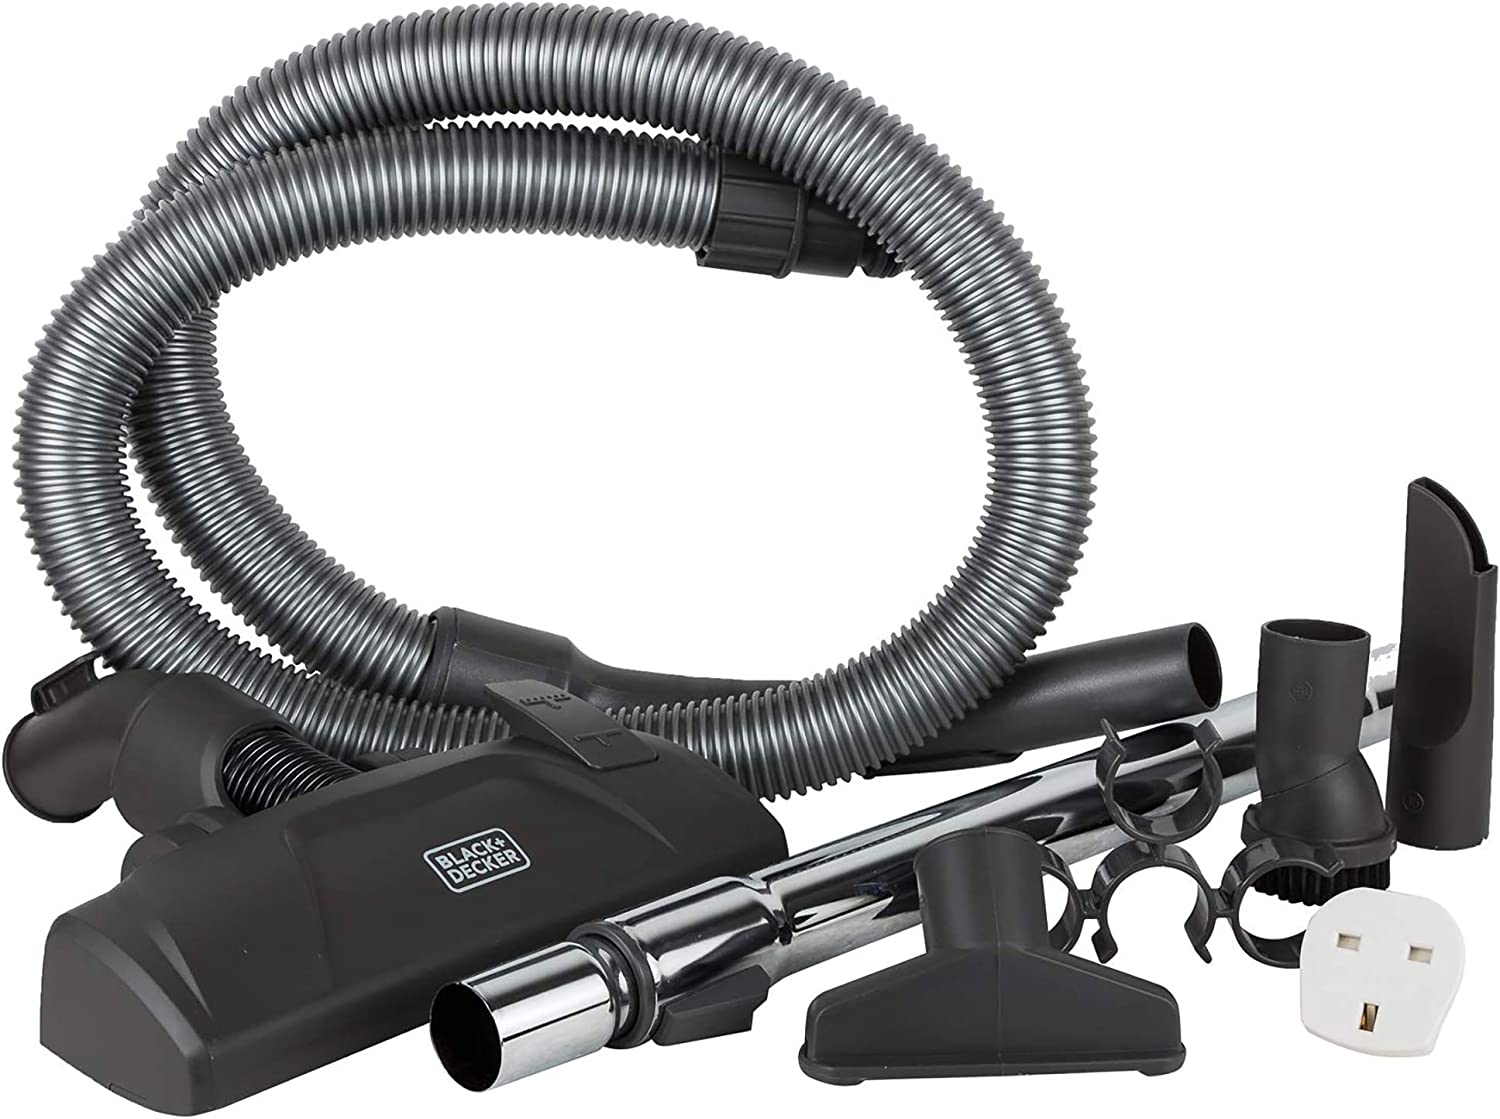 BLACK+DECKER 2000W 2.5L Corded Vacuum Cleaner 21KPa  مكنسة كهربائية بسلك 2000 واط 2.5 لتر بقوة شفط 21 كيلو باسكال